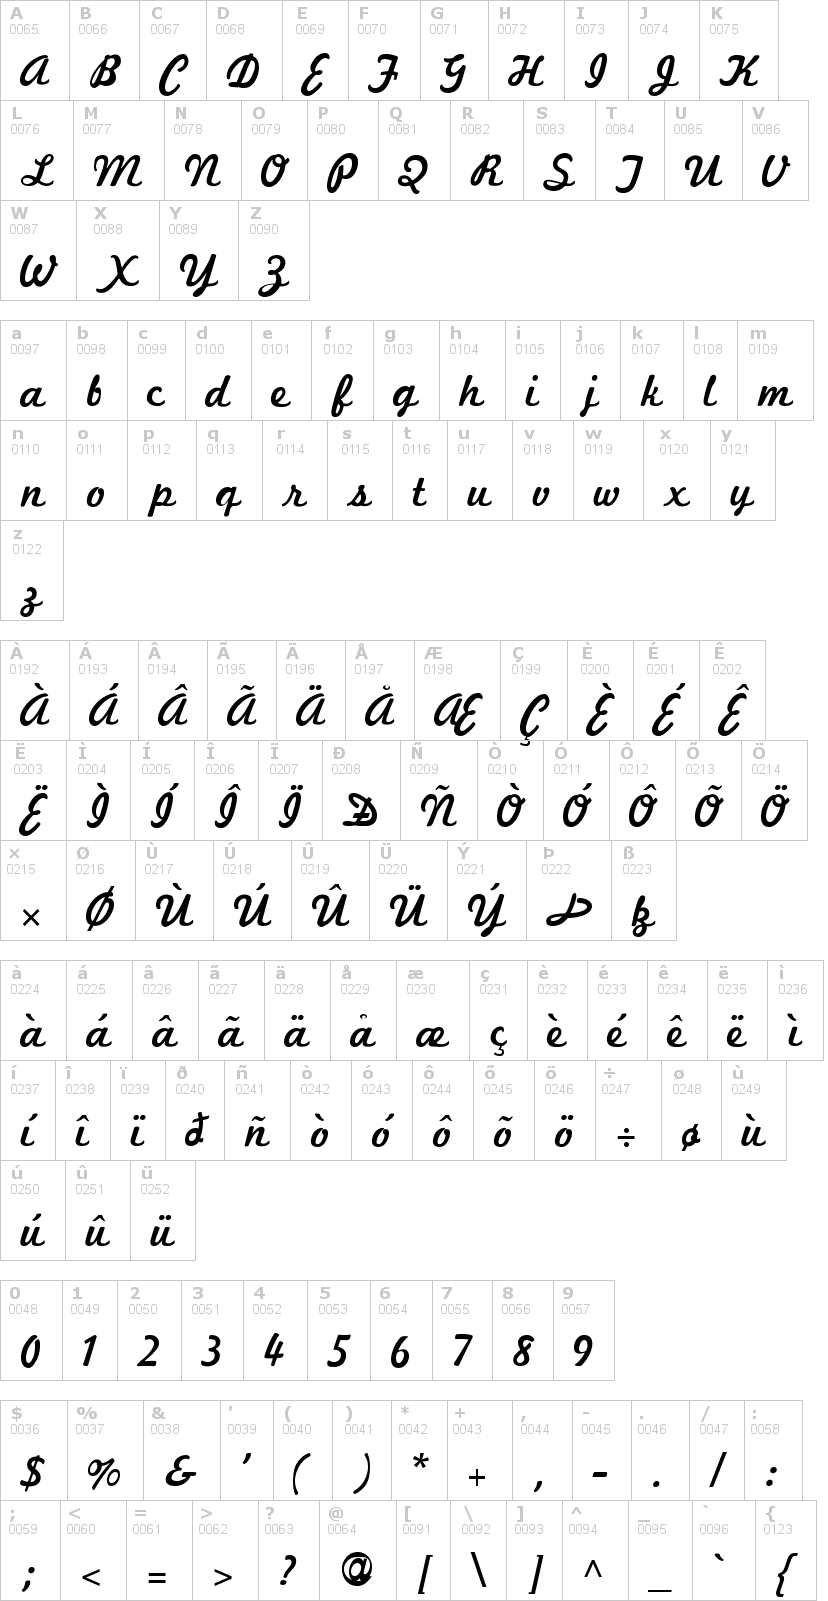 Lettere dell'alfabeto del font marketing-script con le quali è possibile realizzare adesivi prespaziati